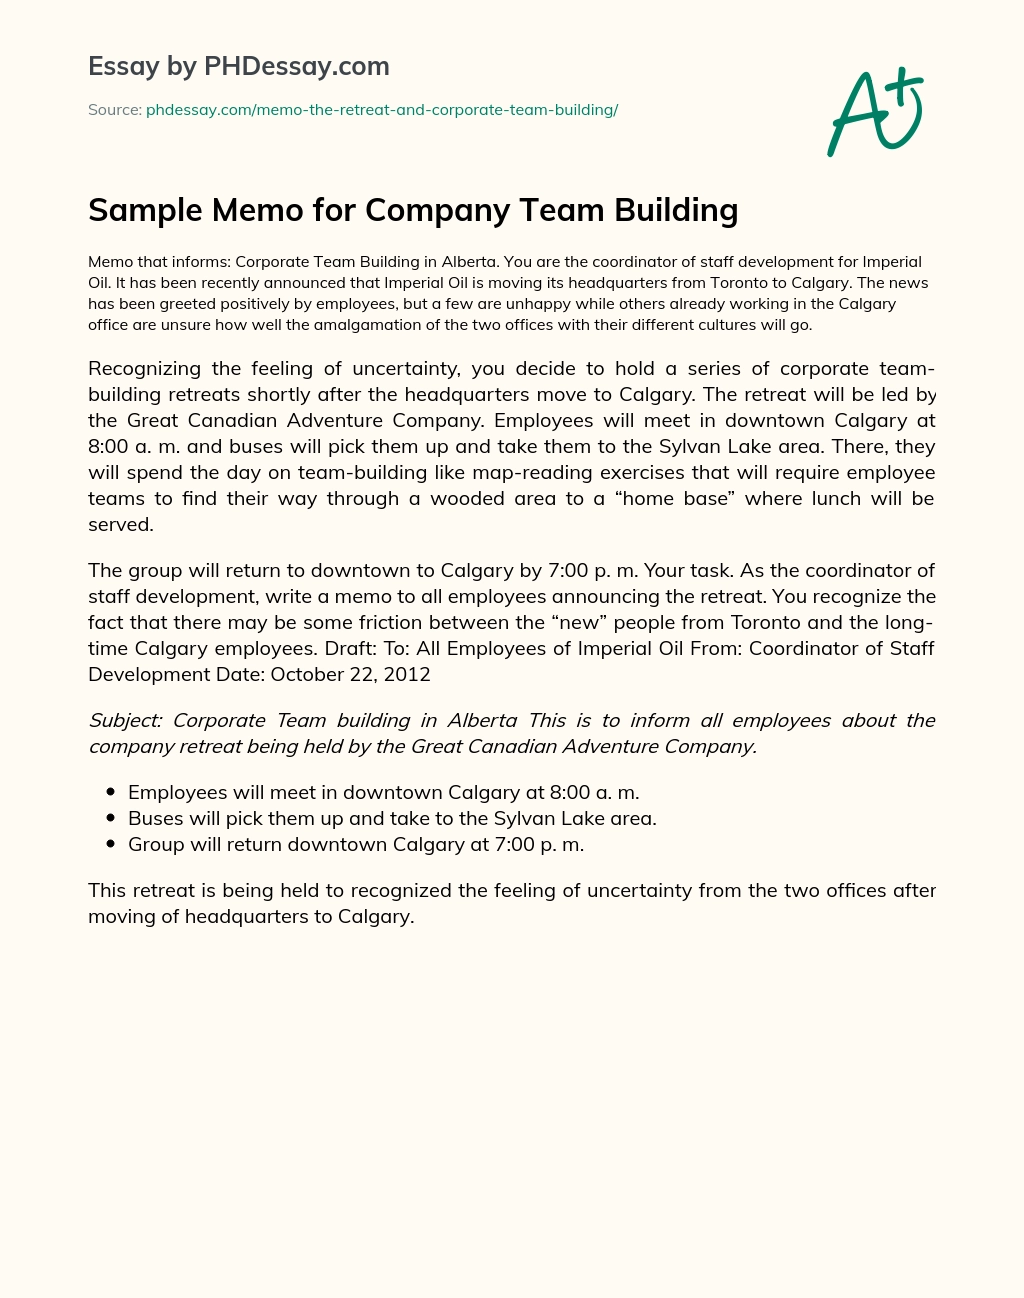 Sample Memo for Company Team Building - PHDessay.com